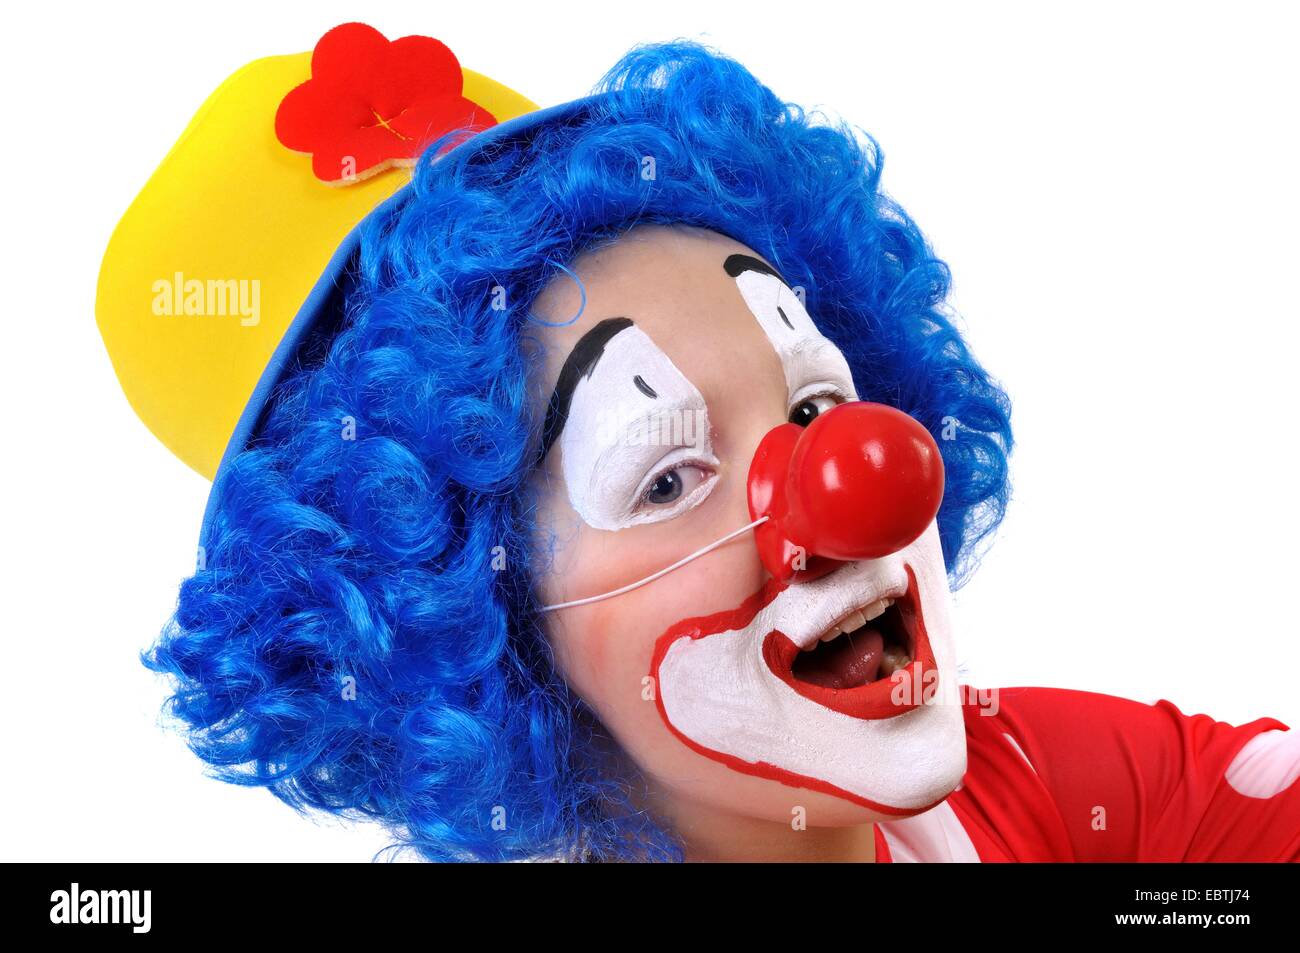 kleiner Junge verkleidete sich als Clown mit gelben Hut, blauer Perücke und falsche rote Nase Stockfoto